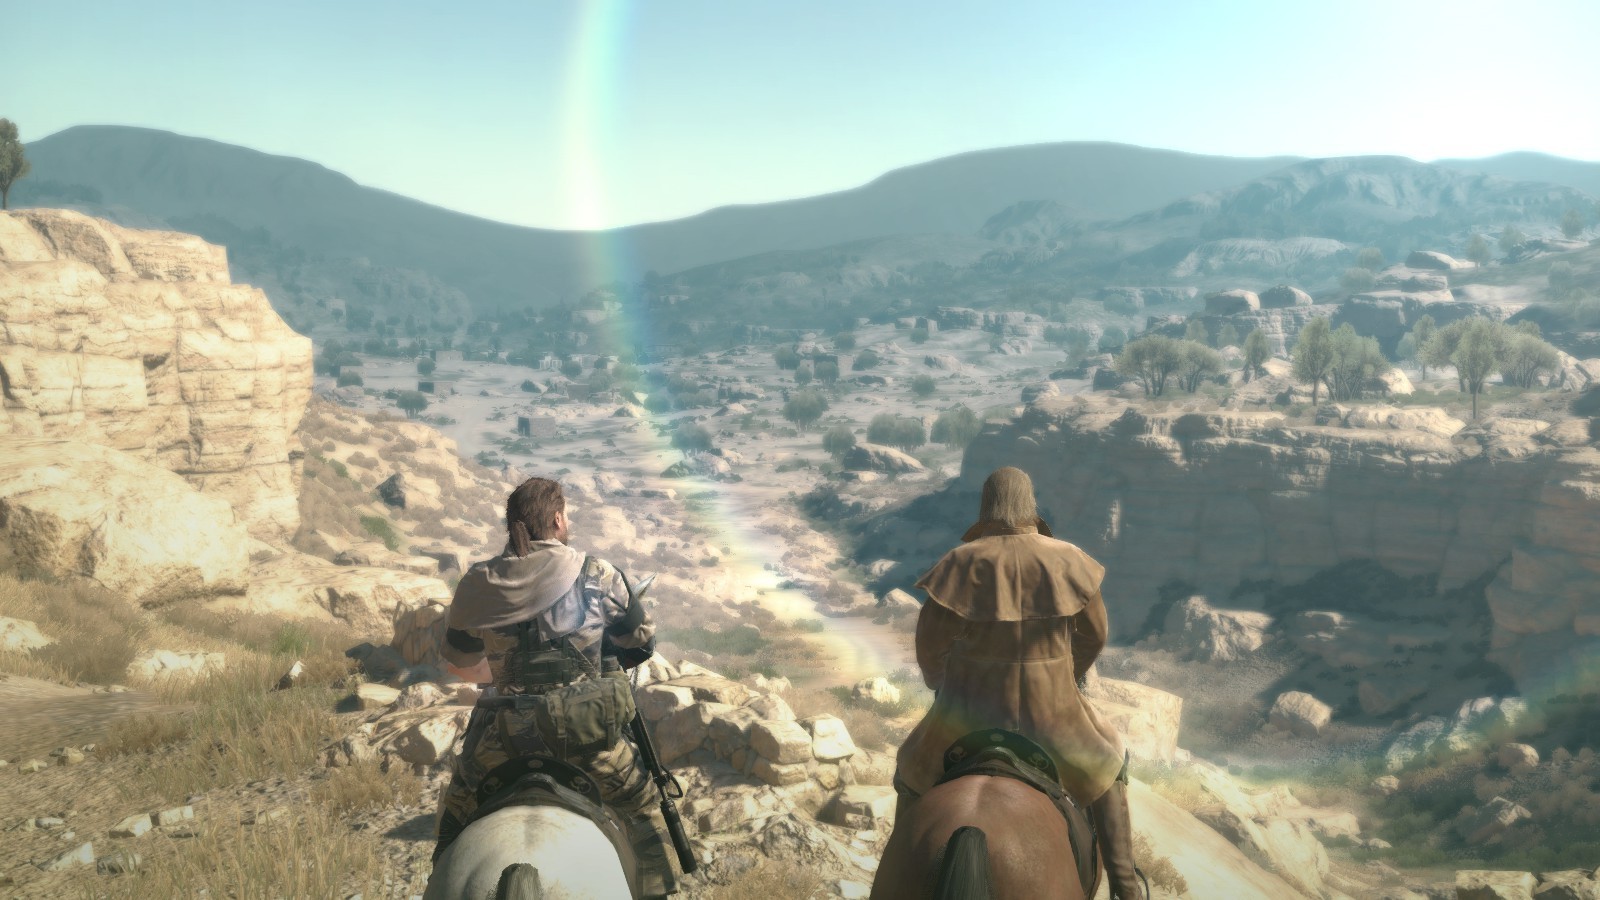 Metal Gear, Screenshots, Video Games, Metal Gear Solid V: The Phantom Pain, Revolver Ocelot, Venom Snake, Landscape, Desert Wallpaper